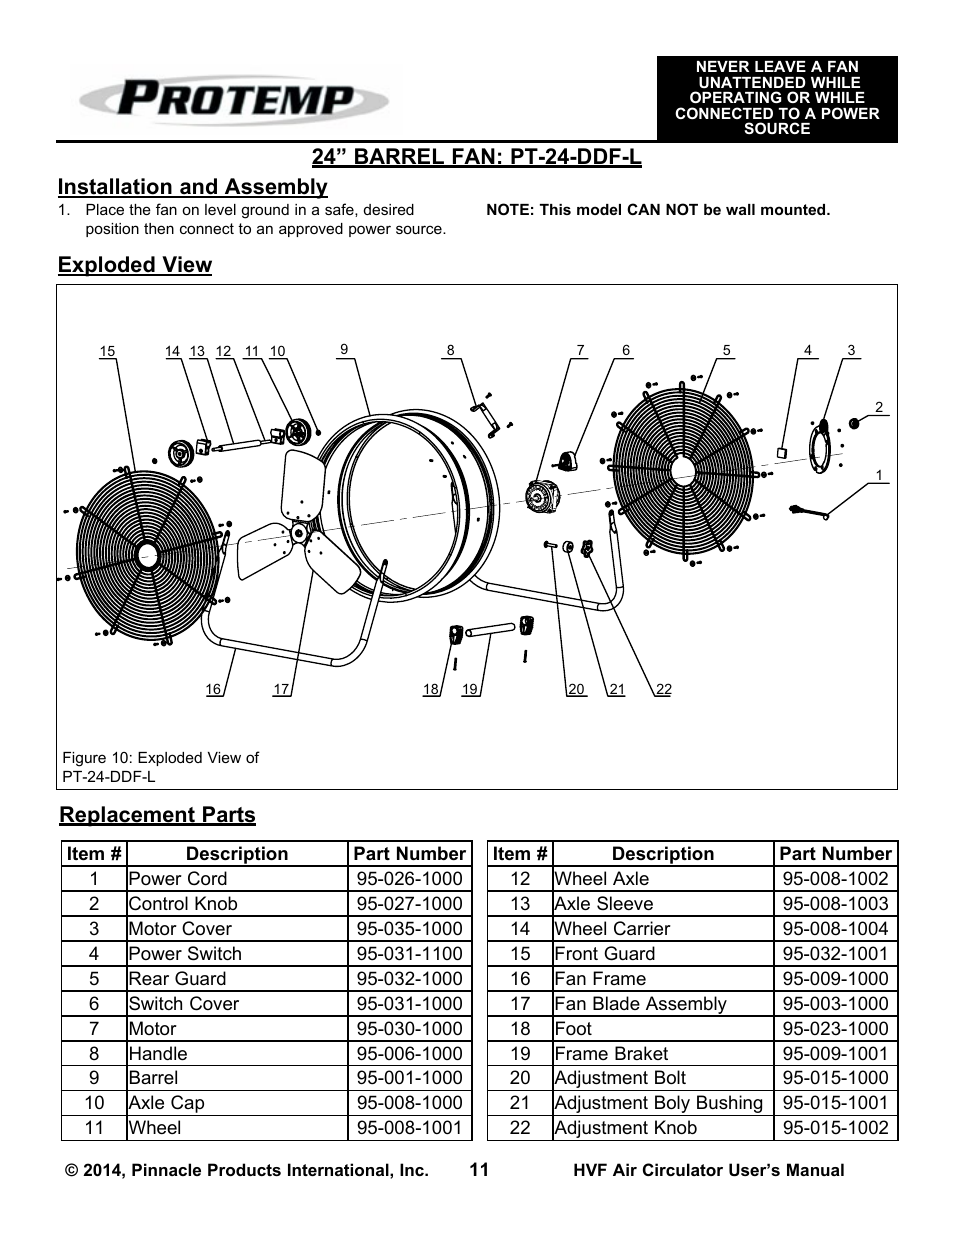 Xe420 Motor - Wallpaperzen.org lasko wiring diagrams 